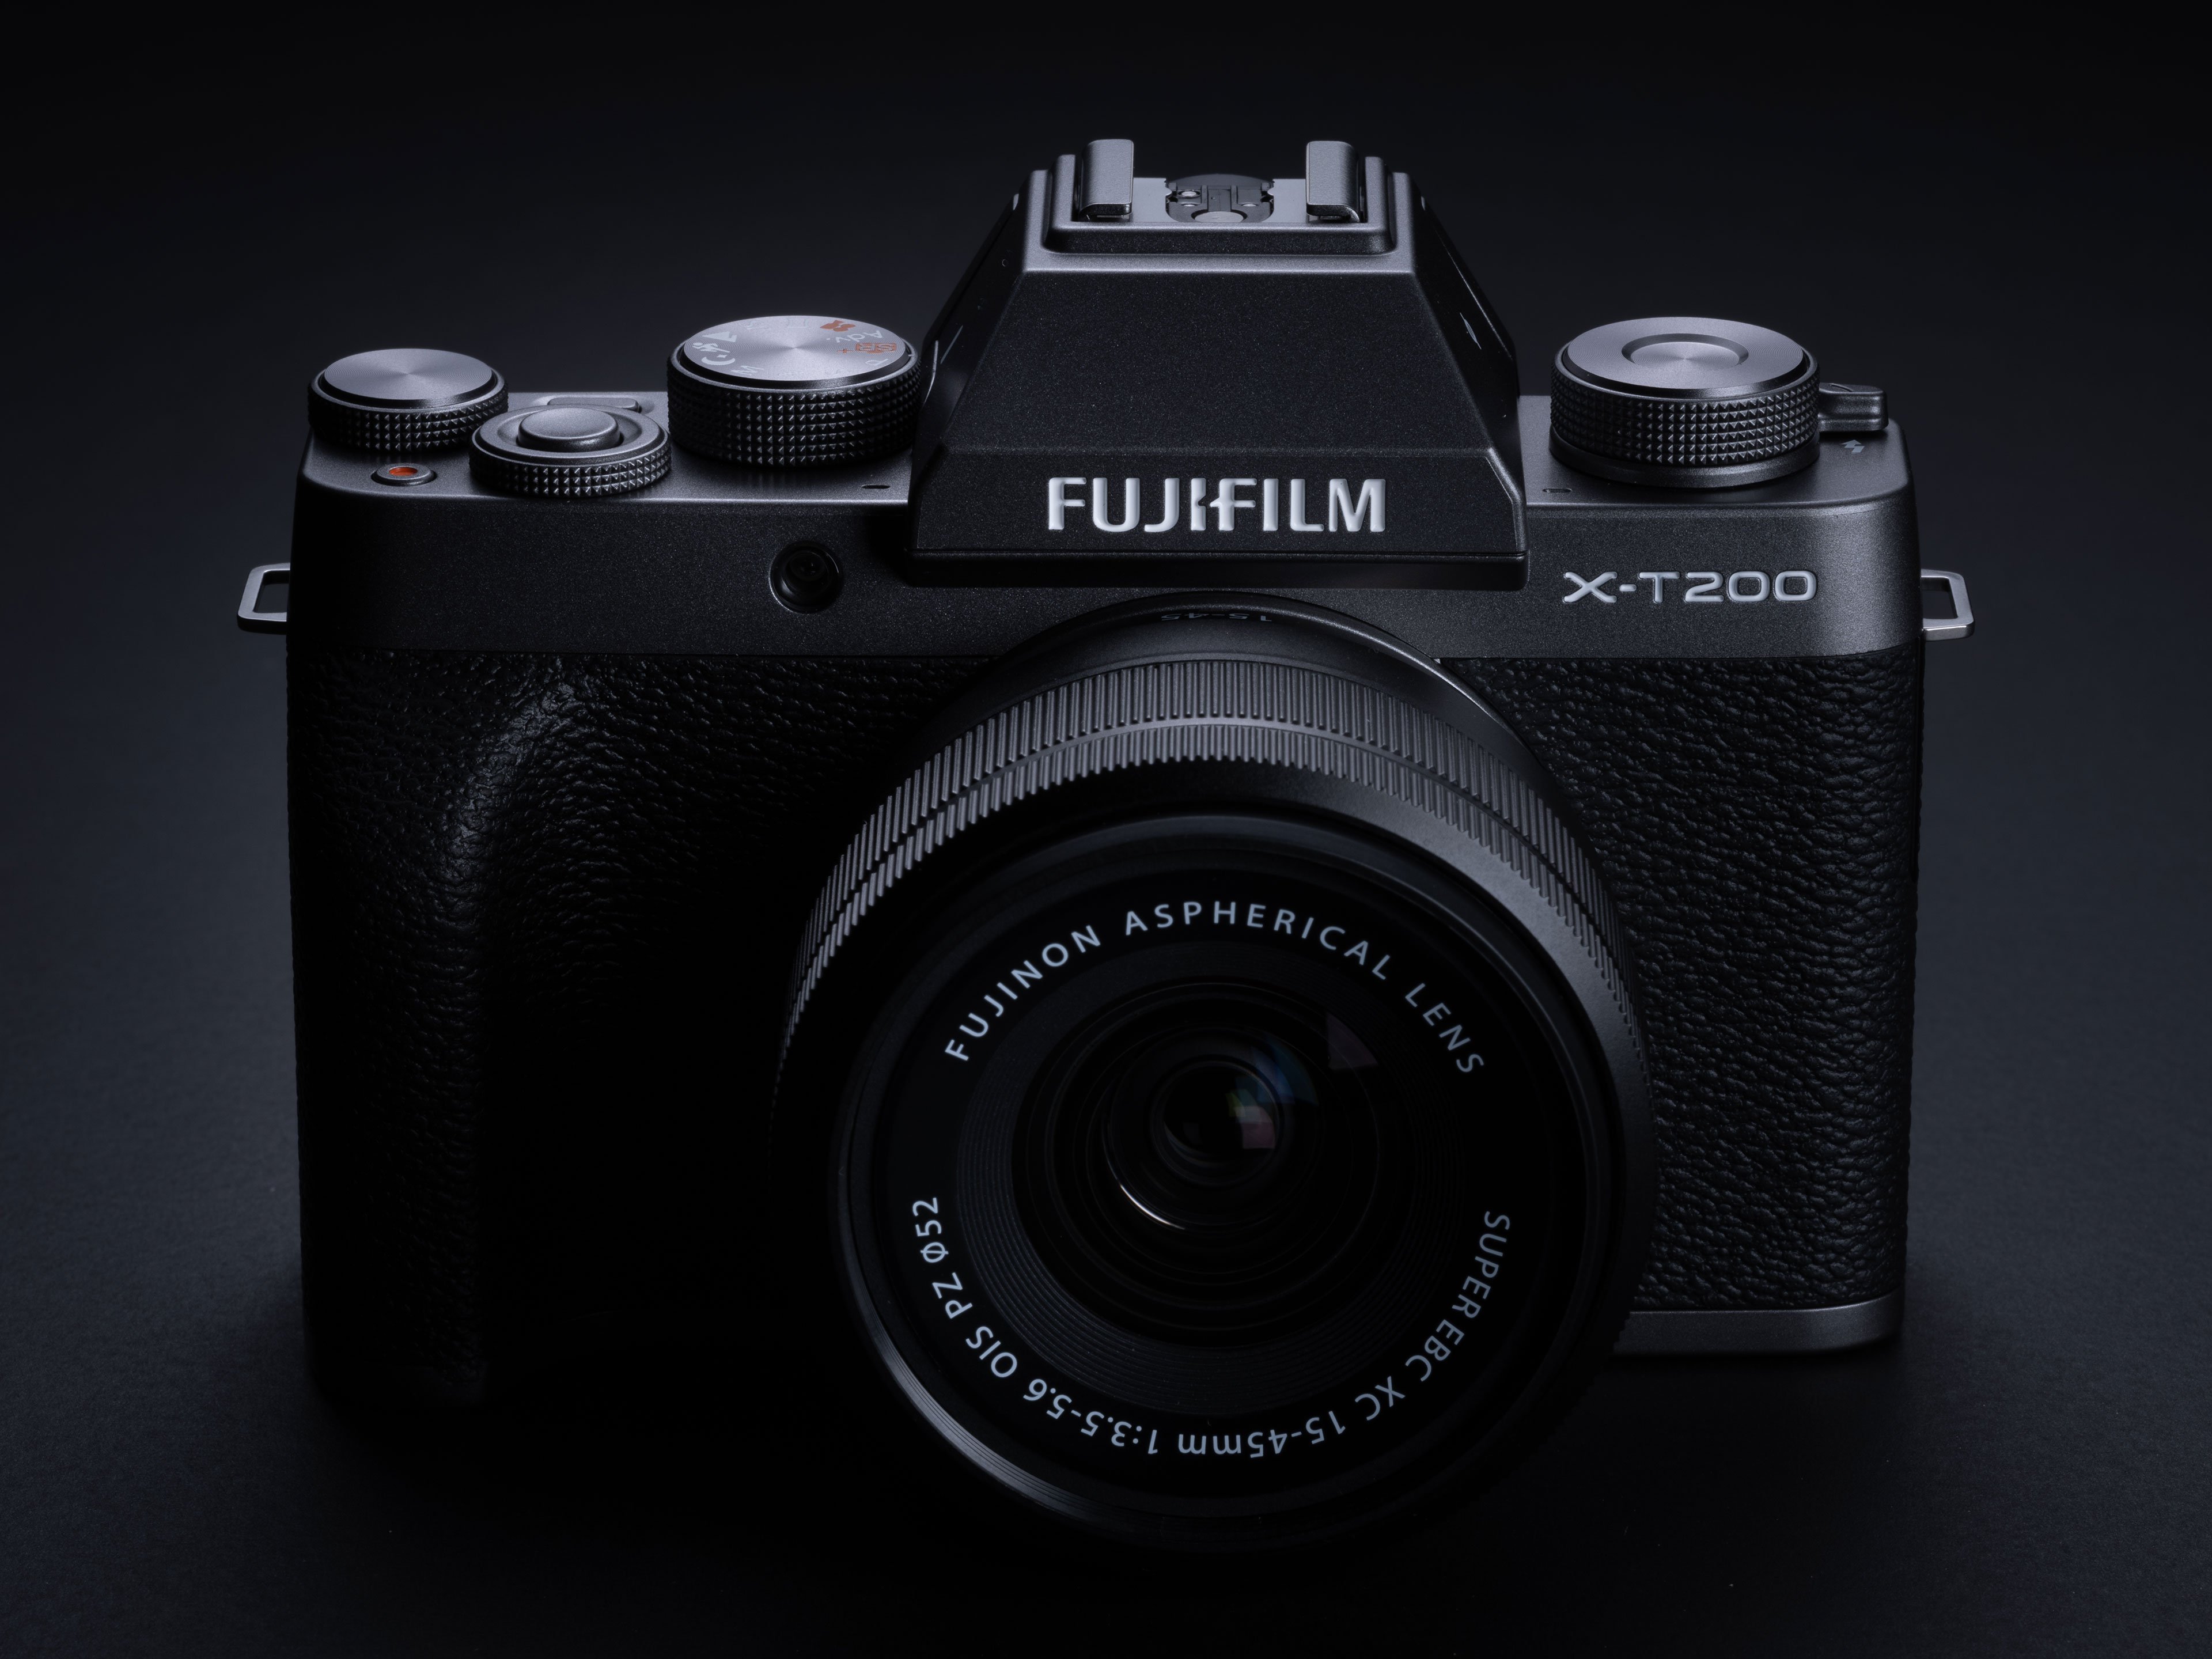 Системный фотоаппарат fujifilm